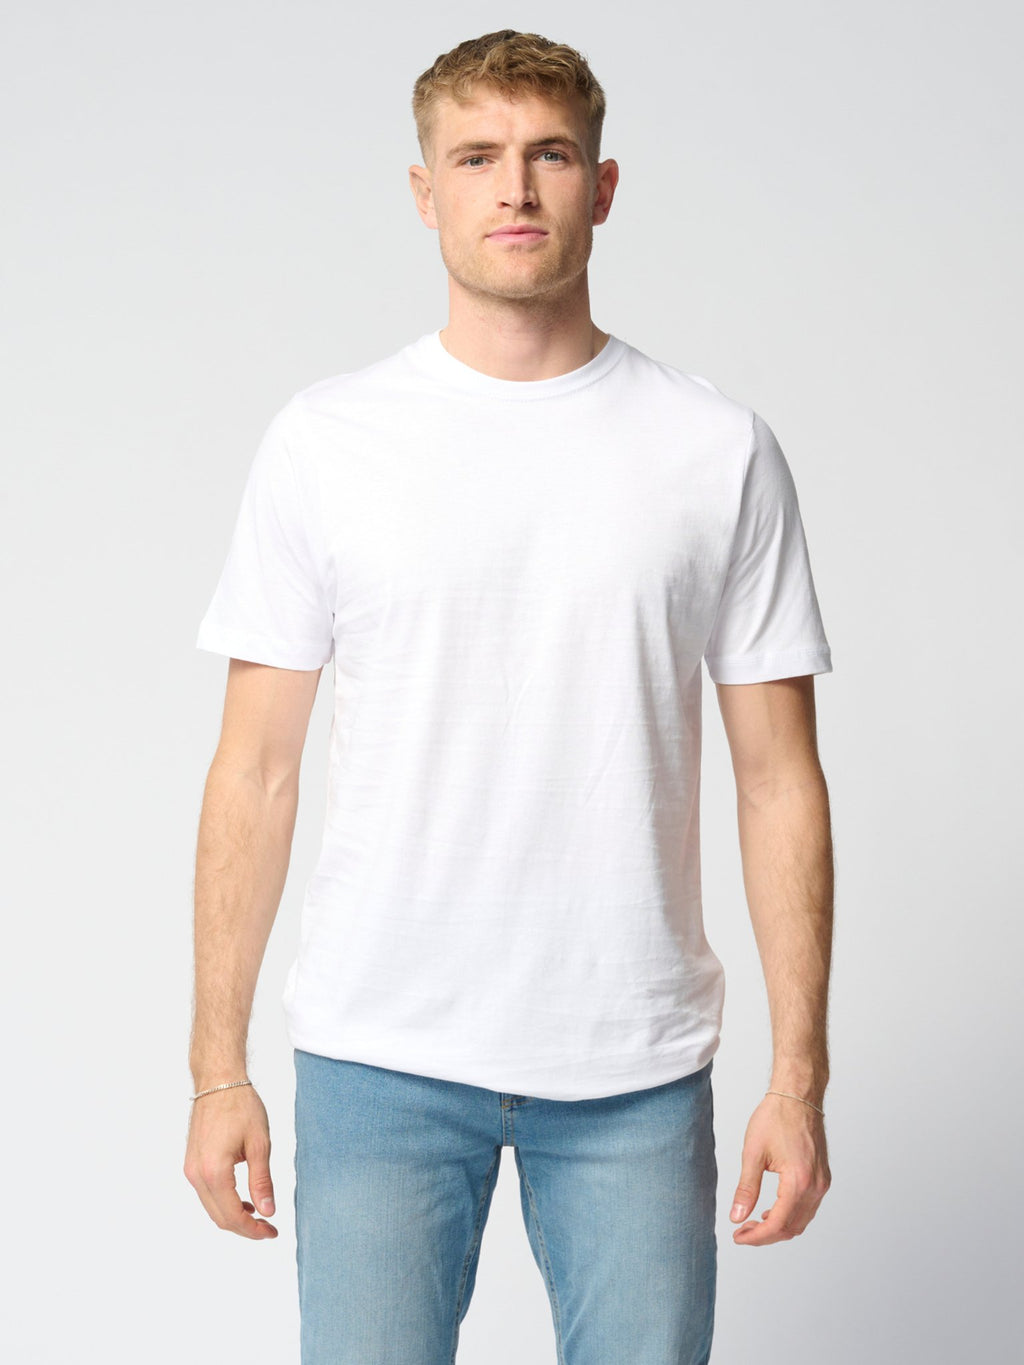 Οργανικό Basic T-Shirts - Πακέτο (9 τεμάχια) (FB)